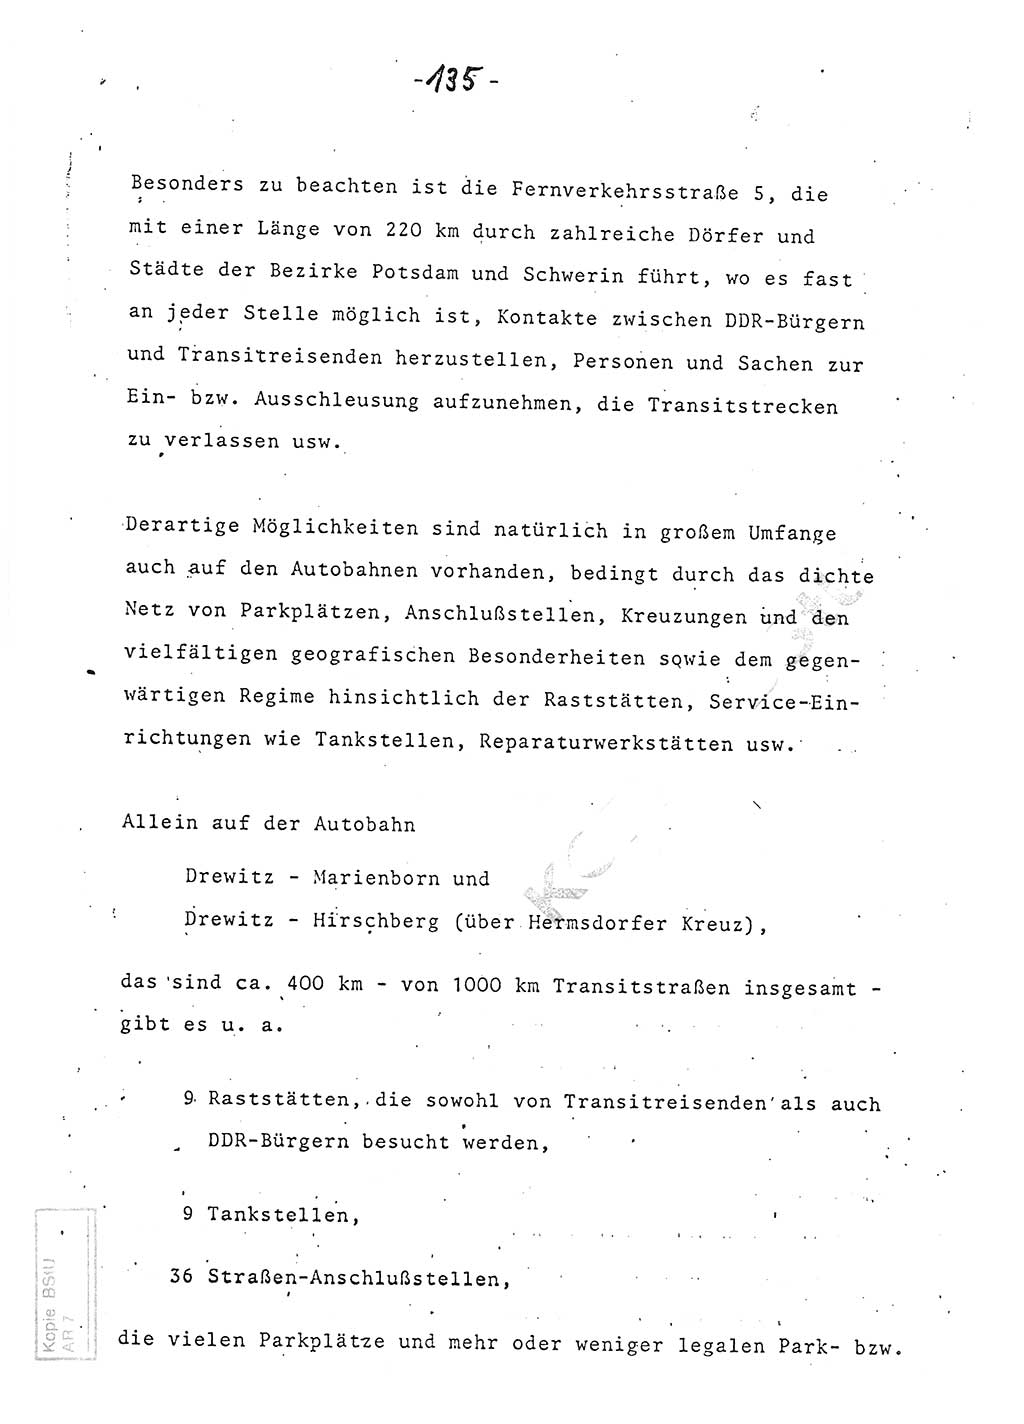 Referat (Entwurf) des Genossen Minister (Generaloberst Erich Mielke) auf der Dienstkonferenz 1972, Ministerium für Staatssicherheit (MfS) [Deutsche Demokratische Republik (DDR)], Der Minister, Geheime Verschlußsache (GVS) 008-150/72, Berlin 25.2.1972, Seite 135 (Ref. Entw. DK MfS DDR Min. GVS 008-150/72 1972, S. 135)